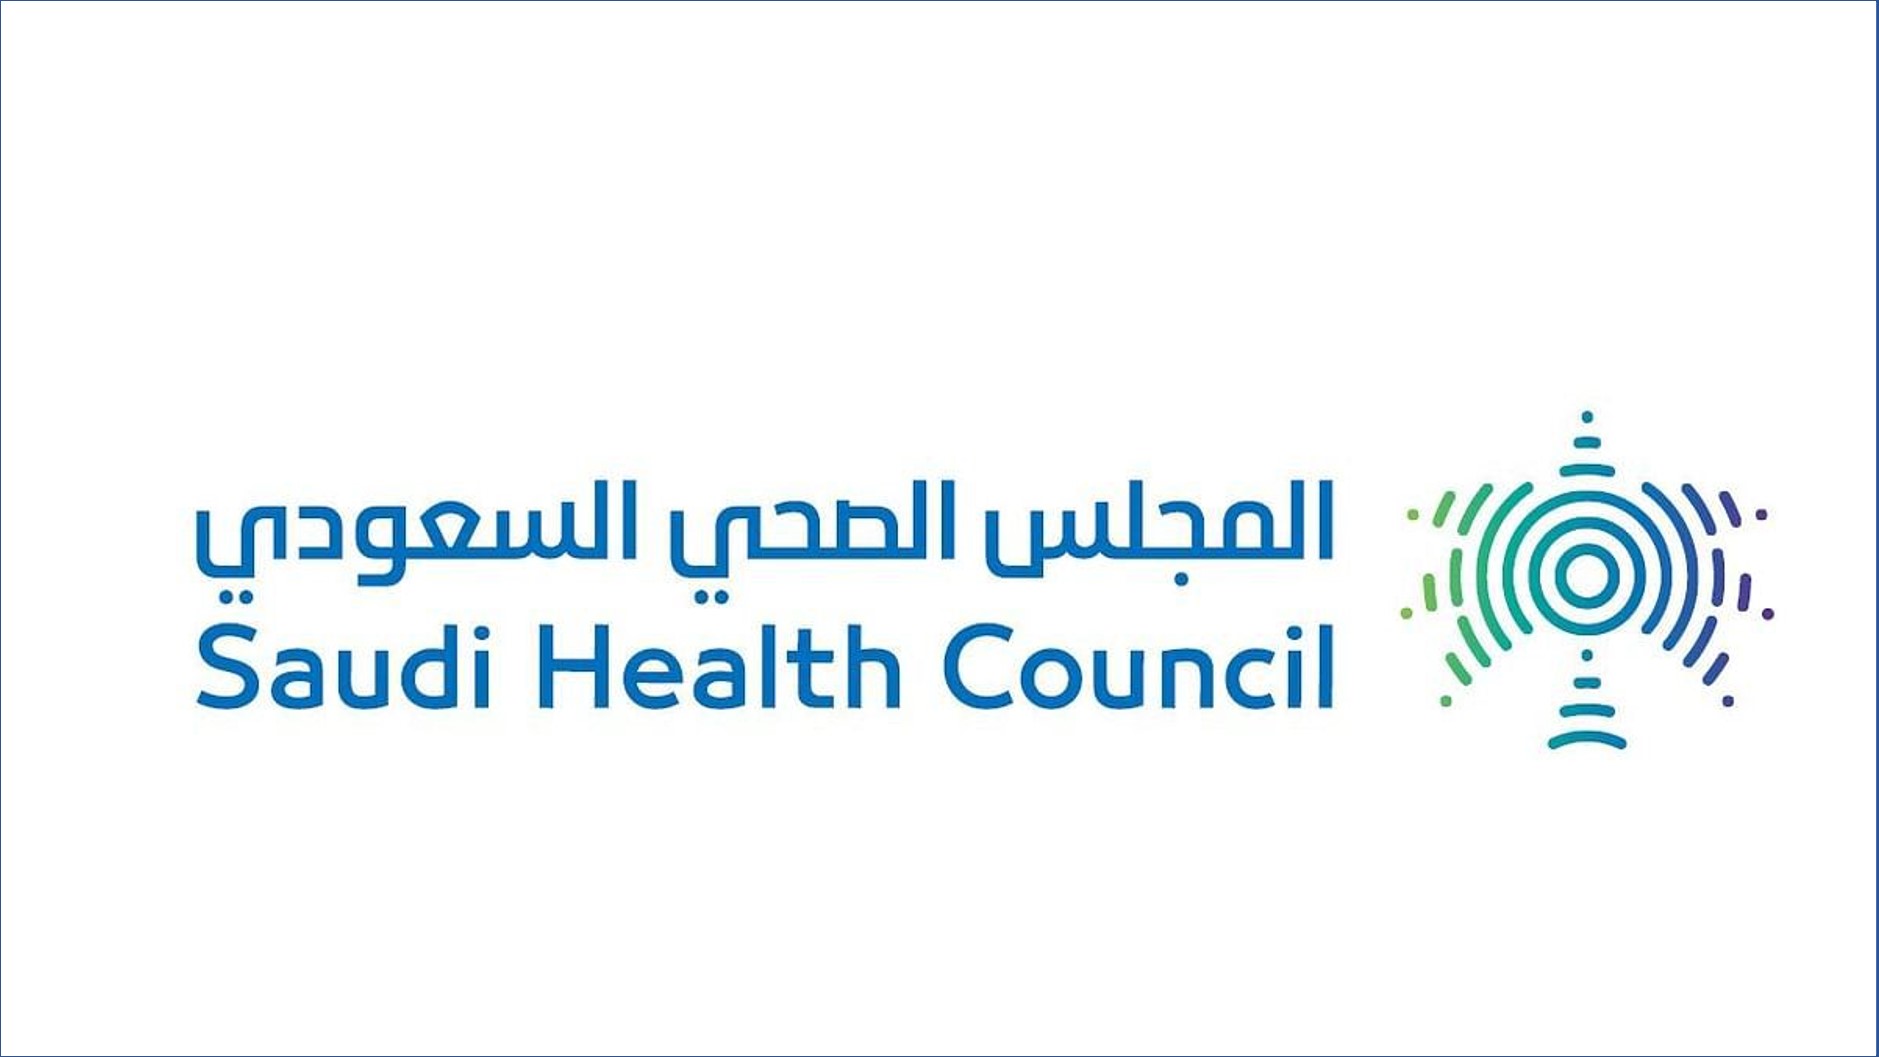 المجلس الصحي السعودي يقدم وظائف للرجال والنساء